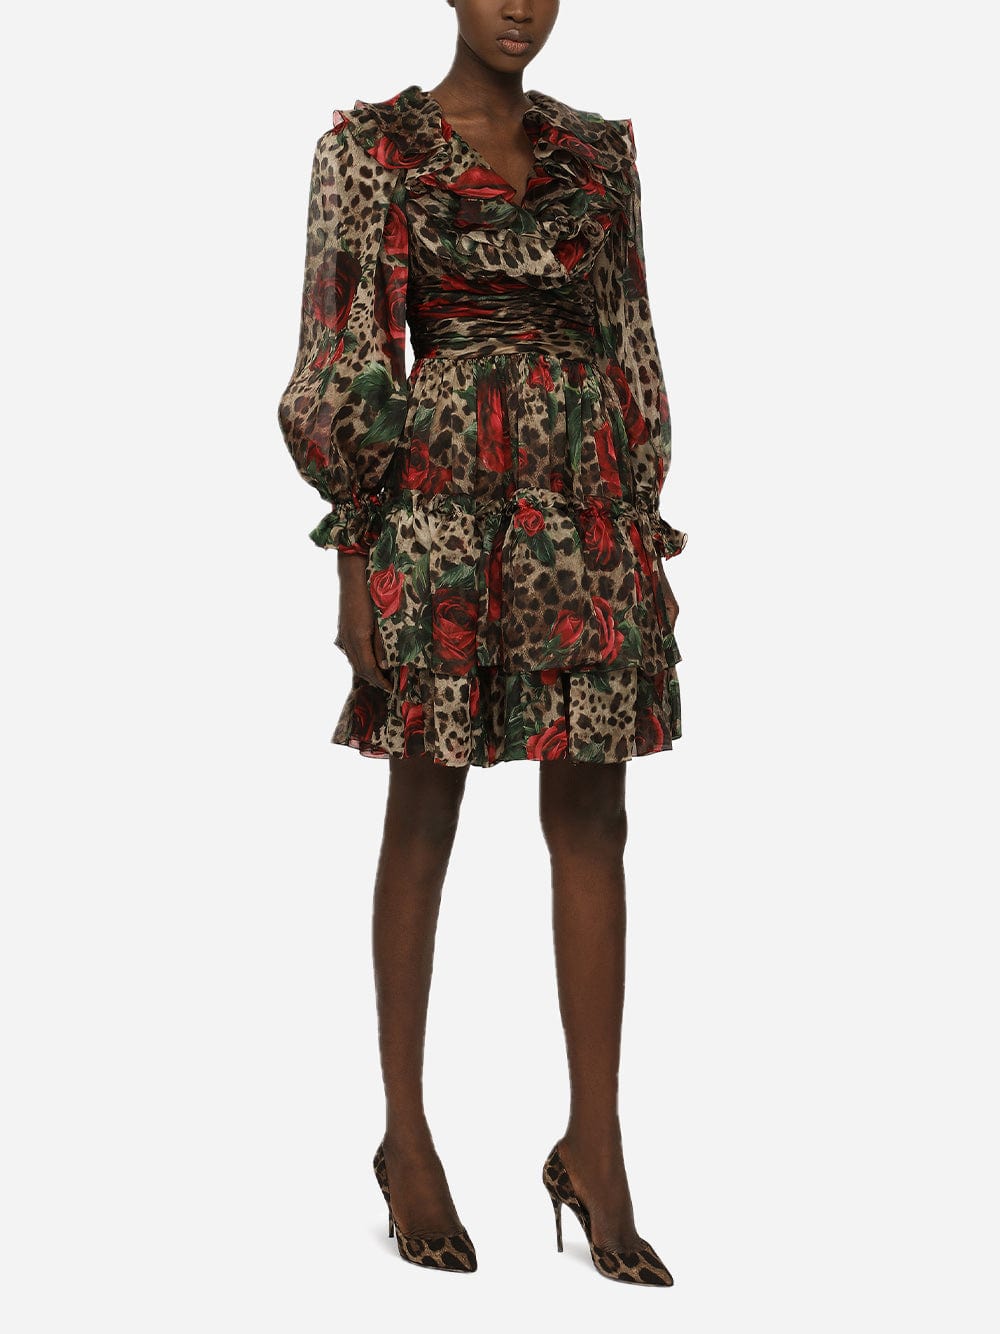 Dolce & Gabbana Ruffled Leopard-Print Silk-Chiffon Dress